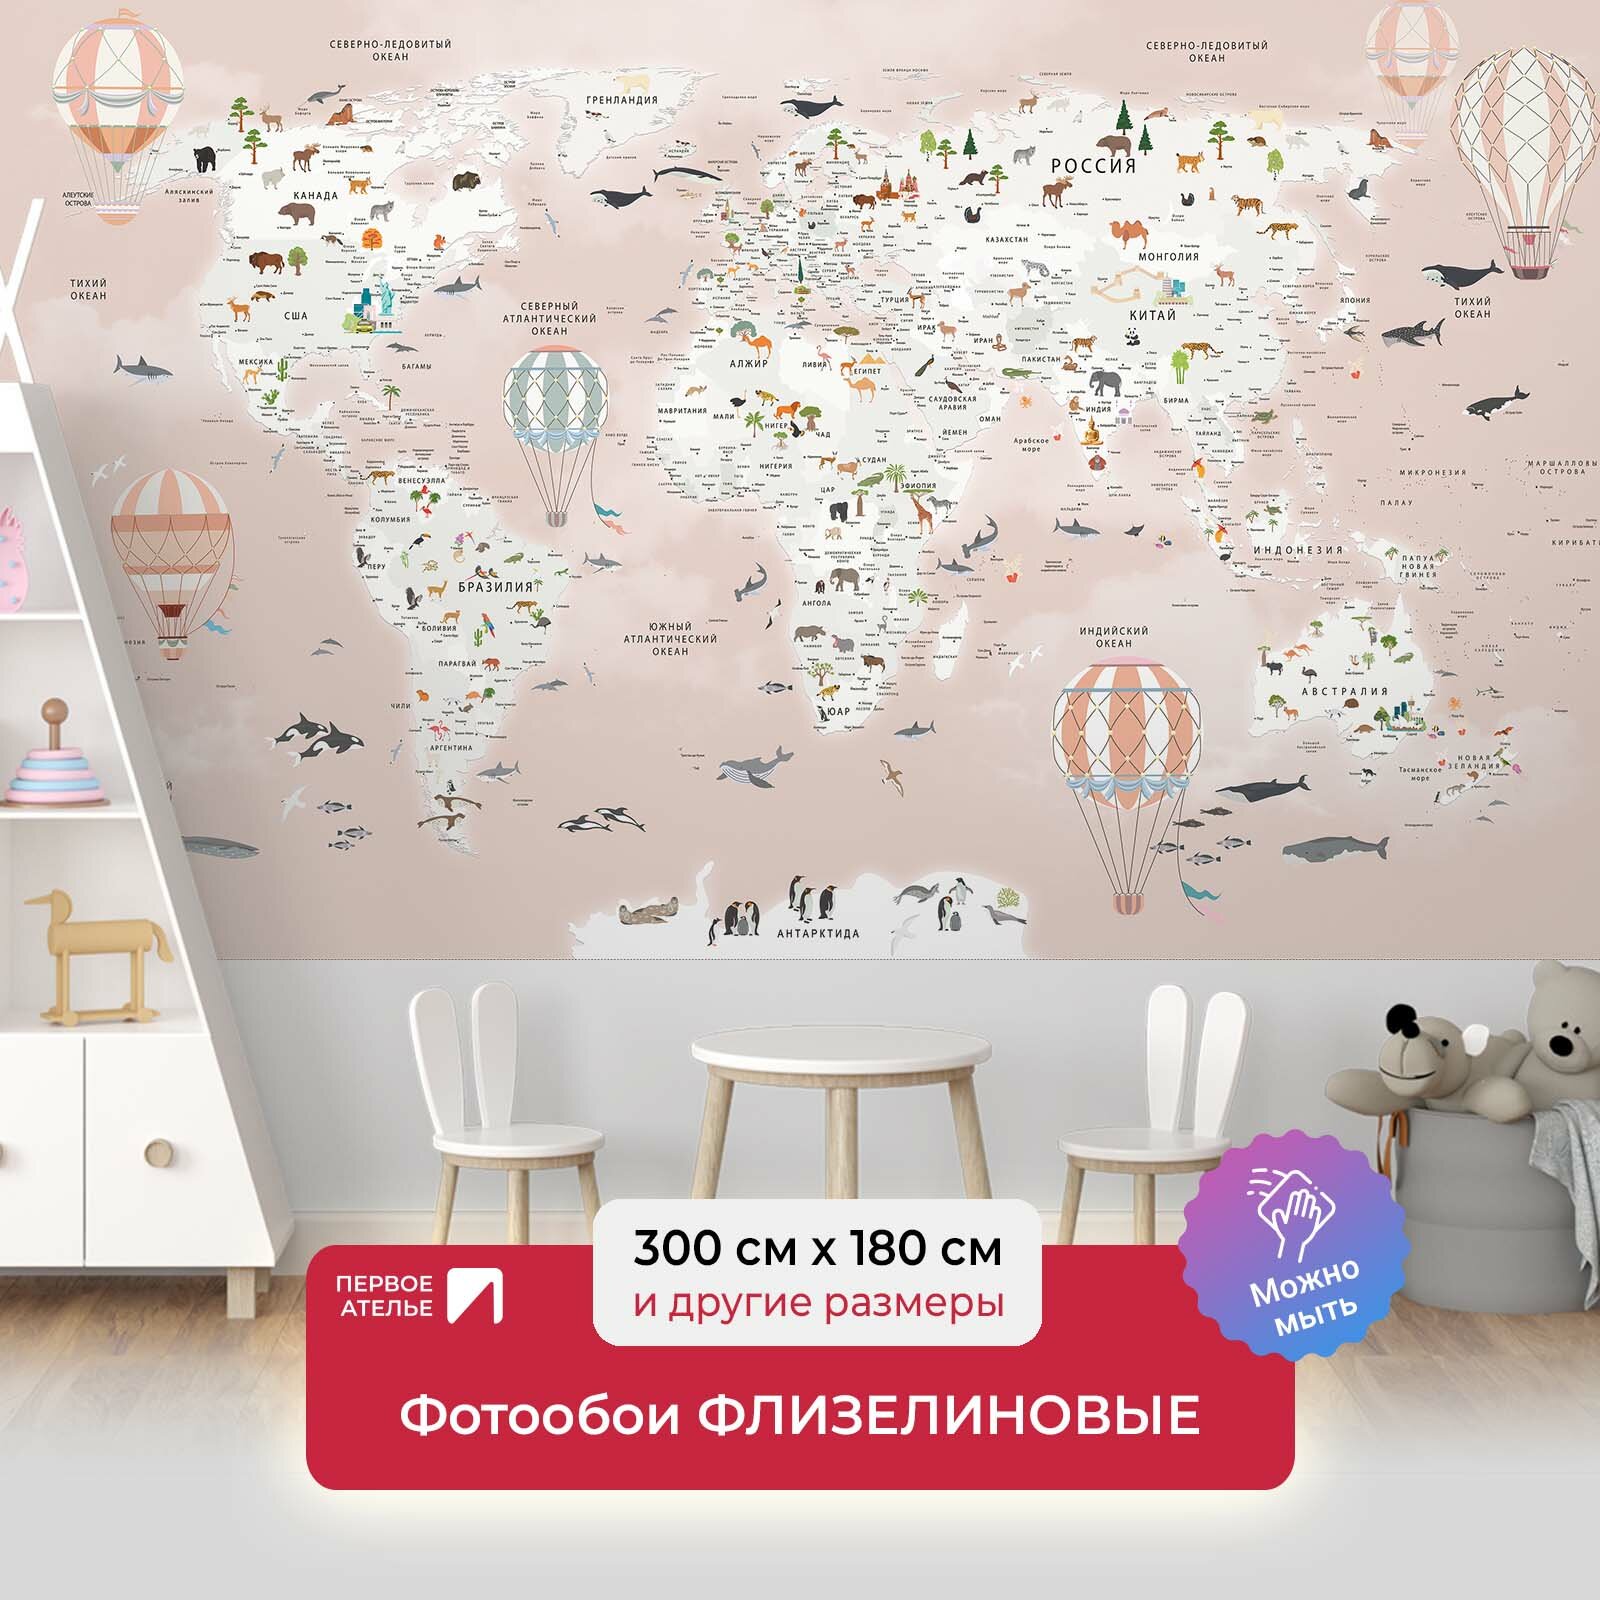 Фотообои на стену для детей, мальчиков и девочек первое ателье "Карта мира с животными и шарами" 300х180 см (ШхВ), флизелиновые Premium